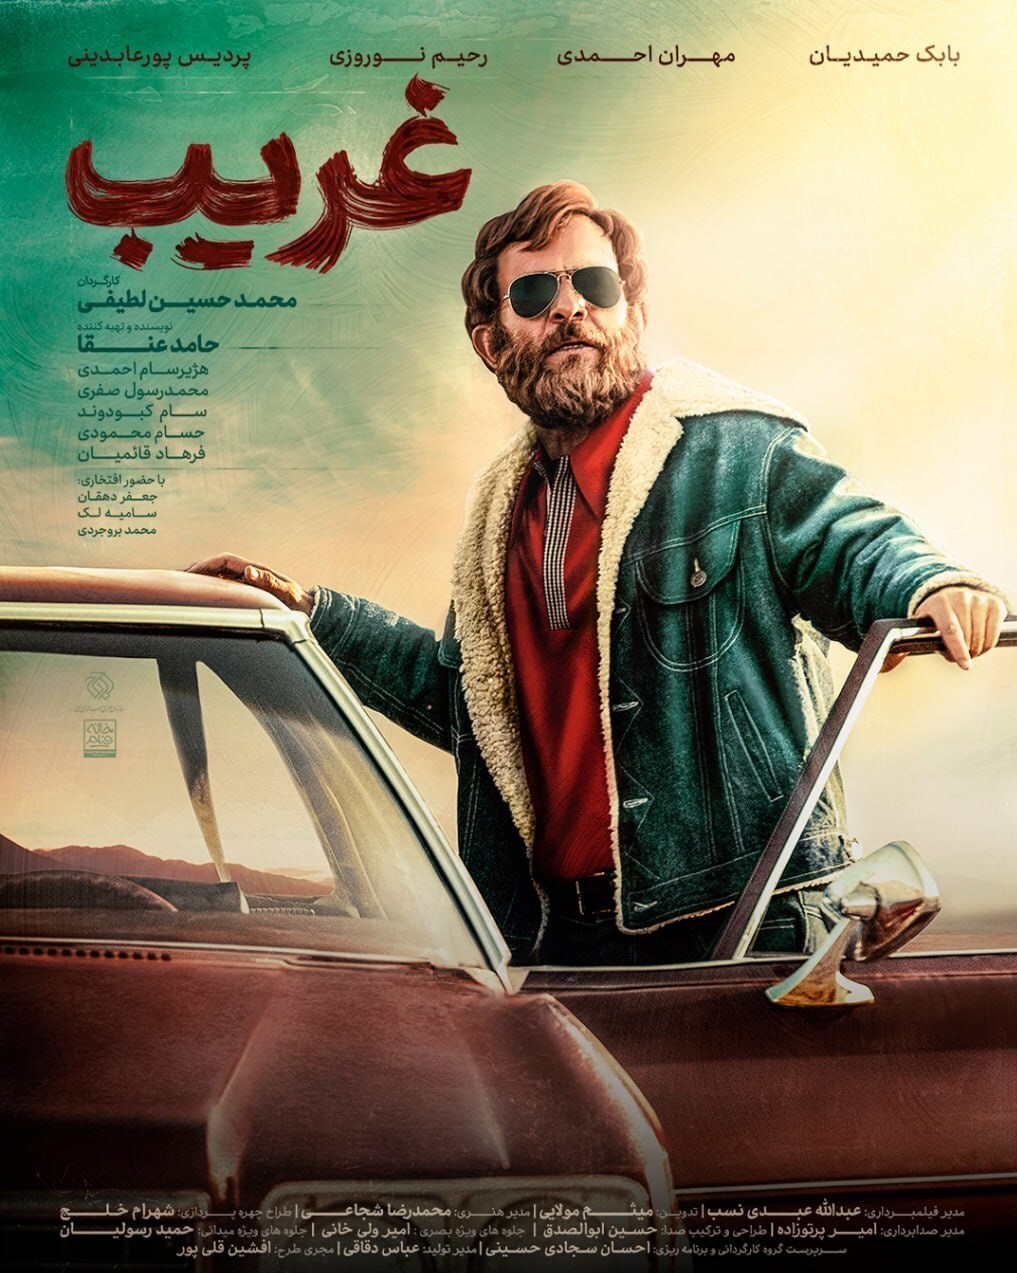 رونمایی از پوستر فیلم زندگی شهید محمد بروجردی